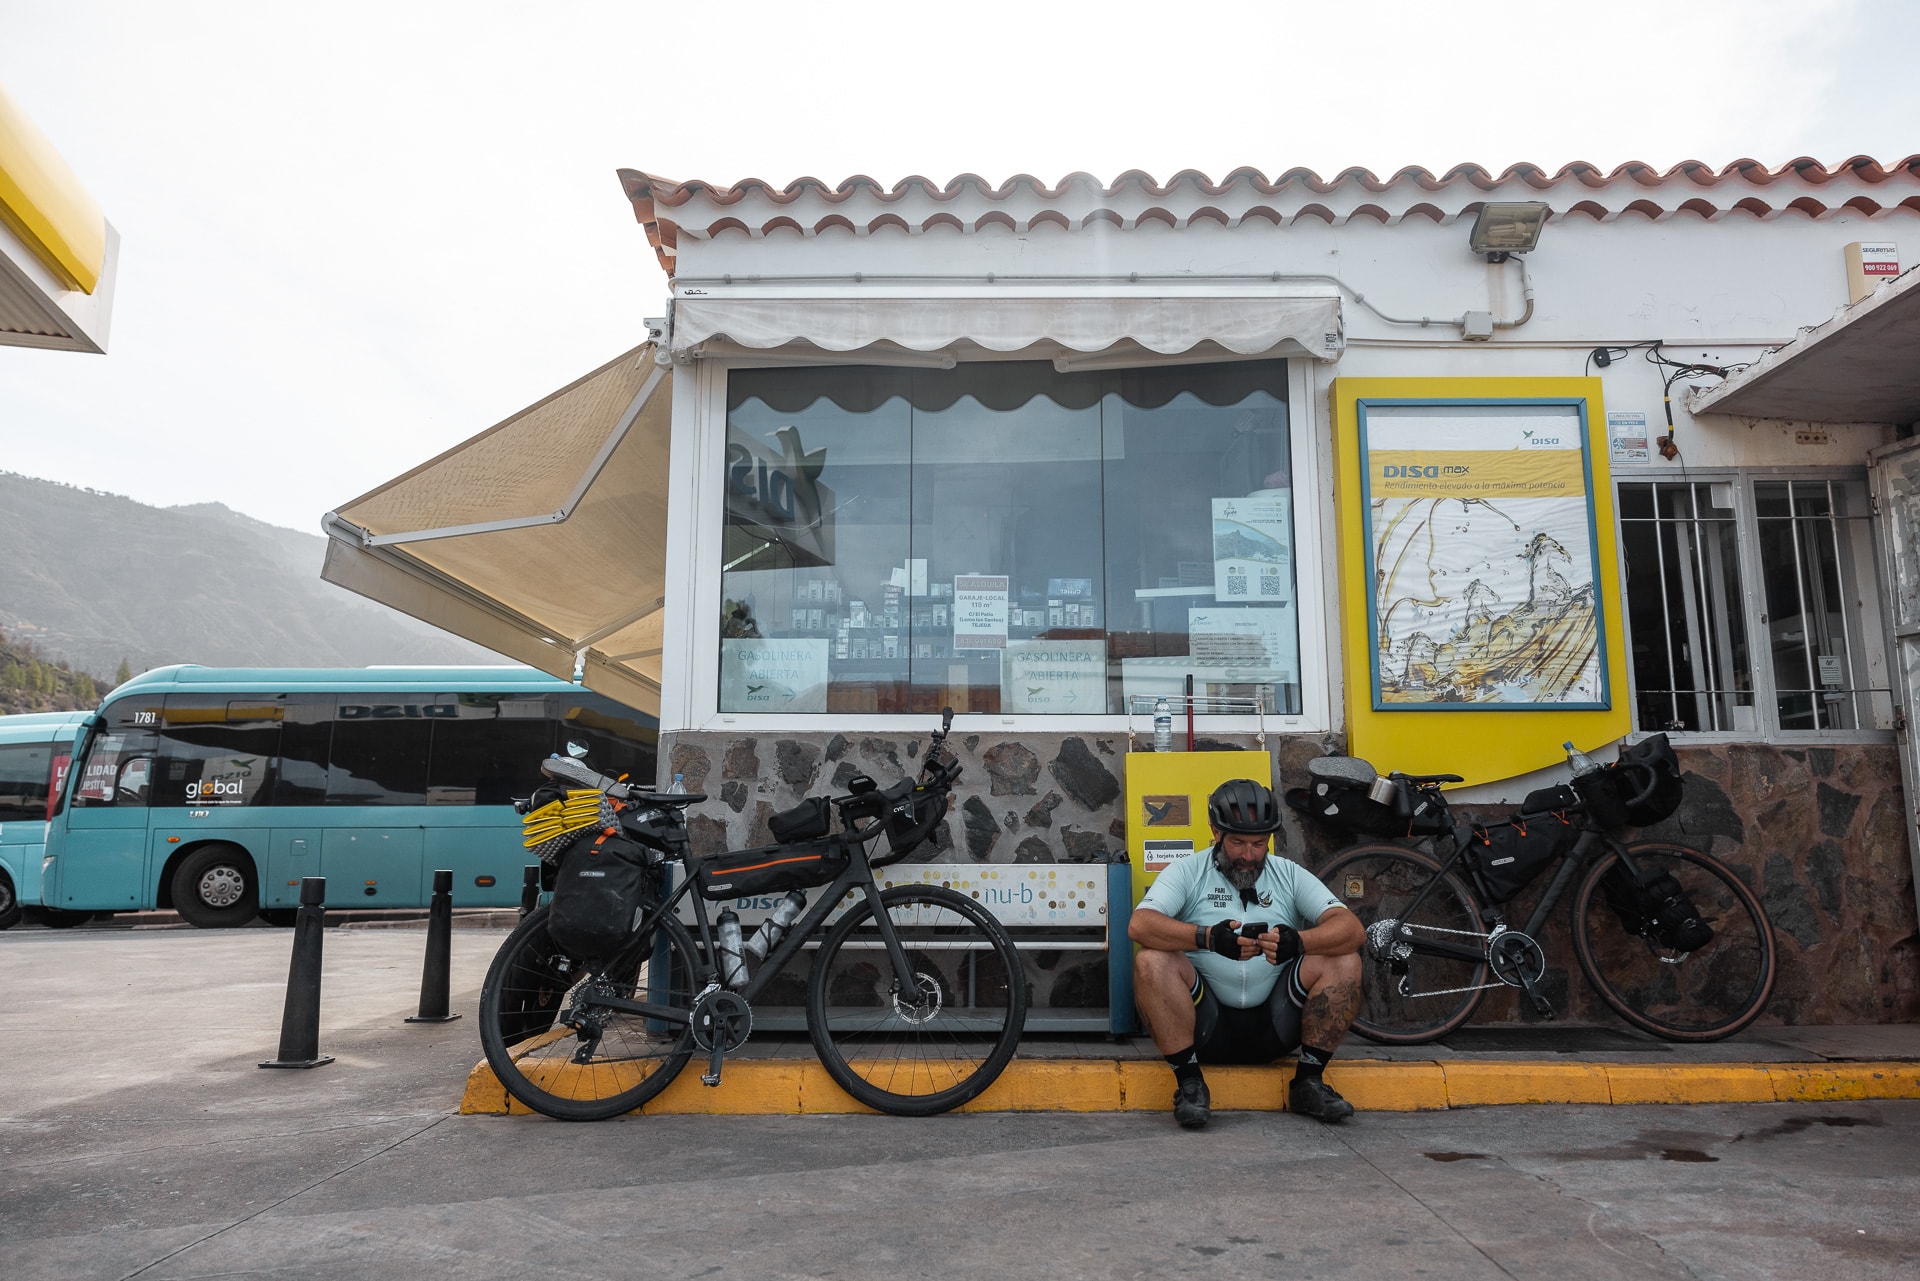 Radfahrer sitzt vor Tankstelle